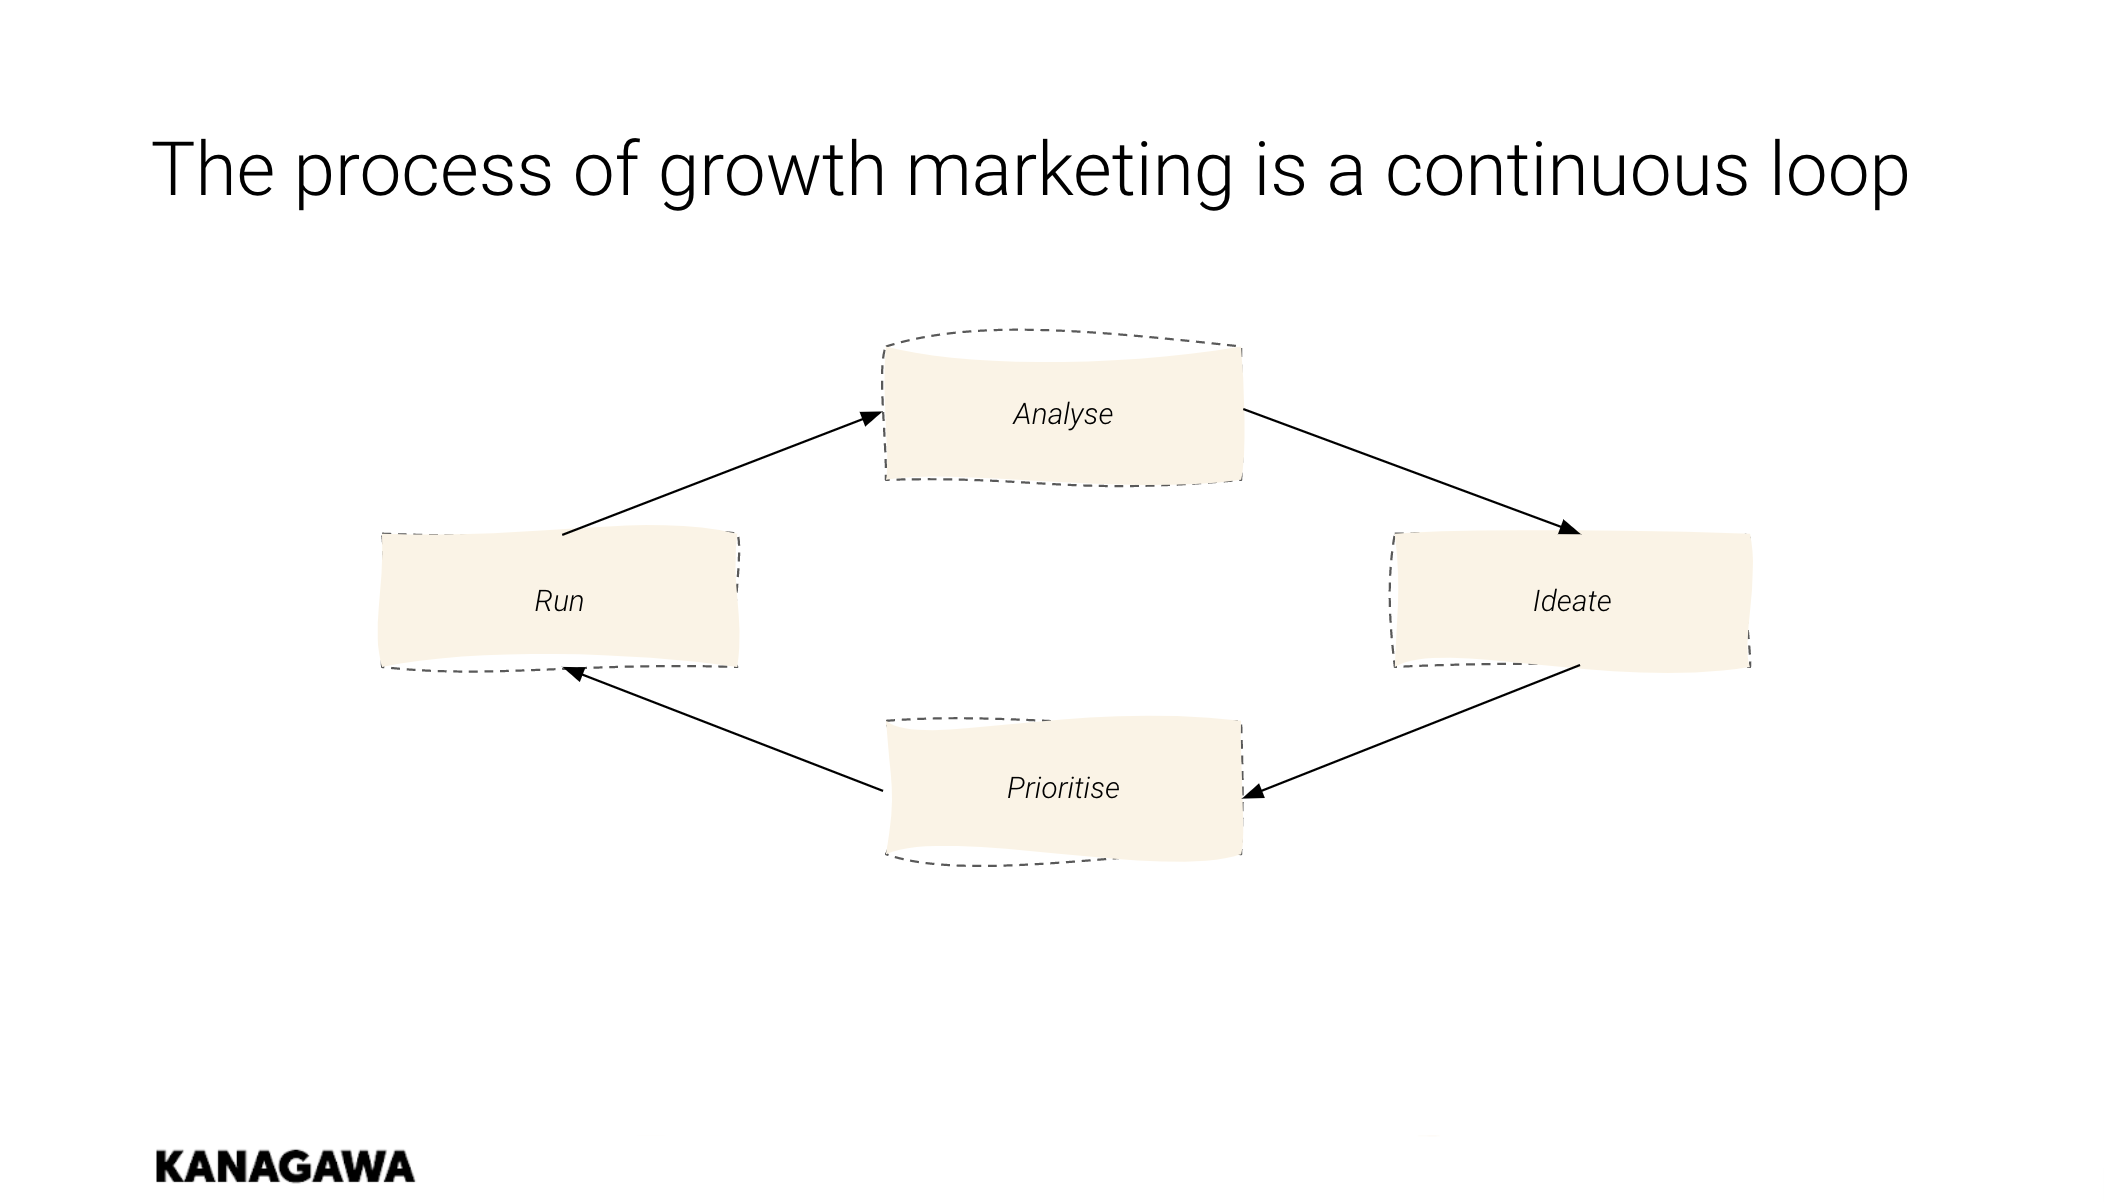 Kanagawa Growth Marketing Loop